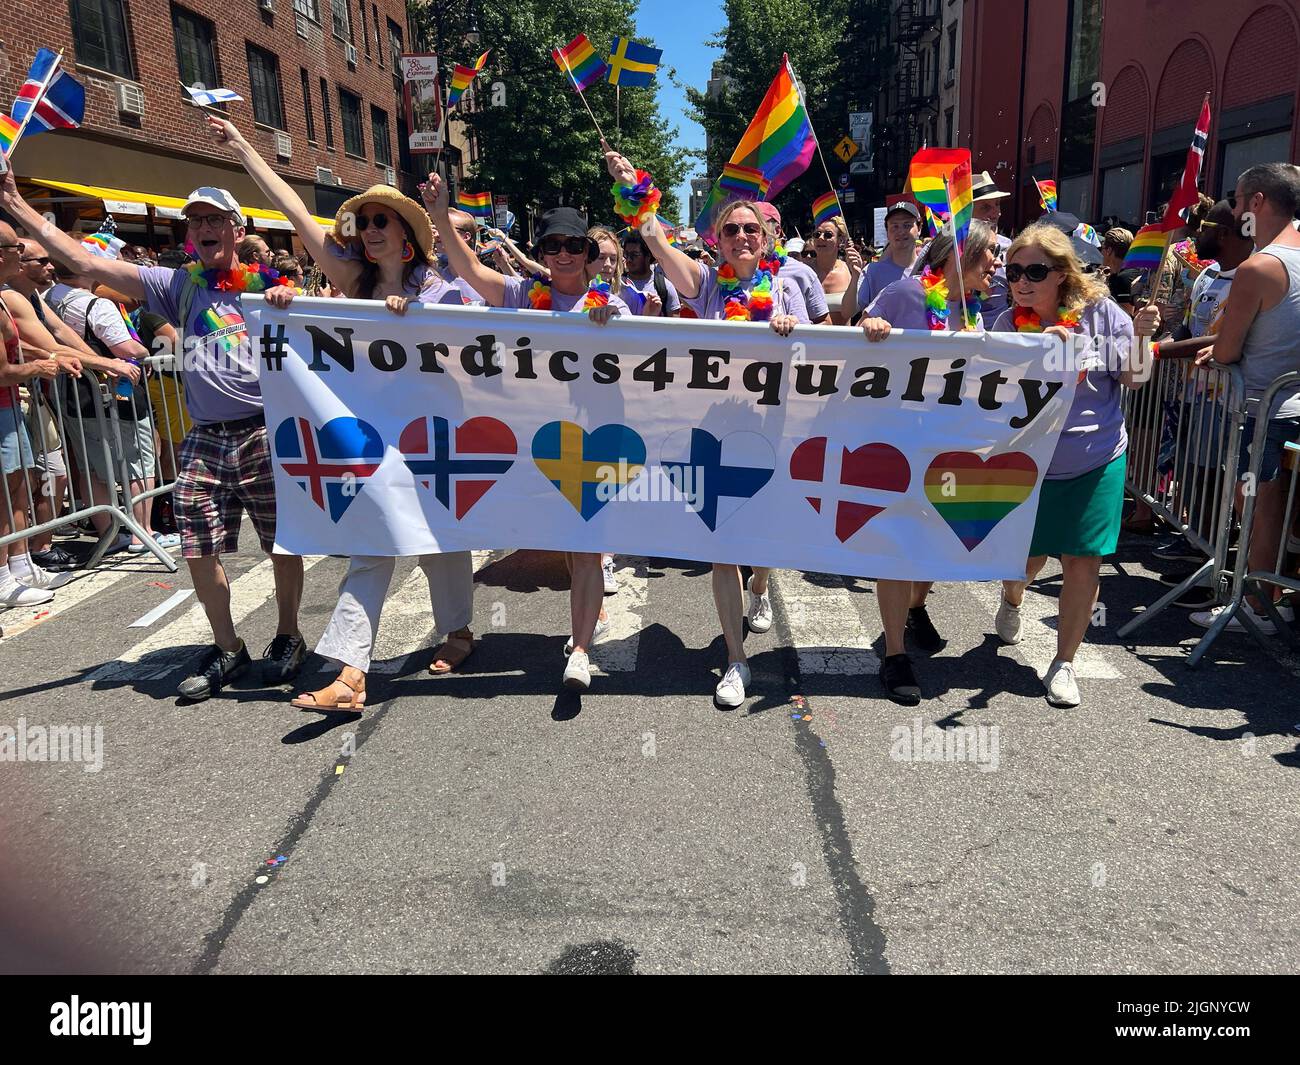 Le défilé annuel gay Pride revient en mars sur 5th Avenue et se termine sur Christopher Street dans Greenwich Village après une pause de 3 ans en raison de la pandémie Covid-19. Les pays nordiques pour l'égalité montrent leur présence à la marche. Banque D'Images